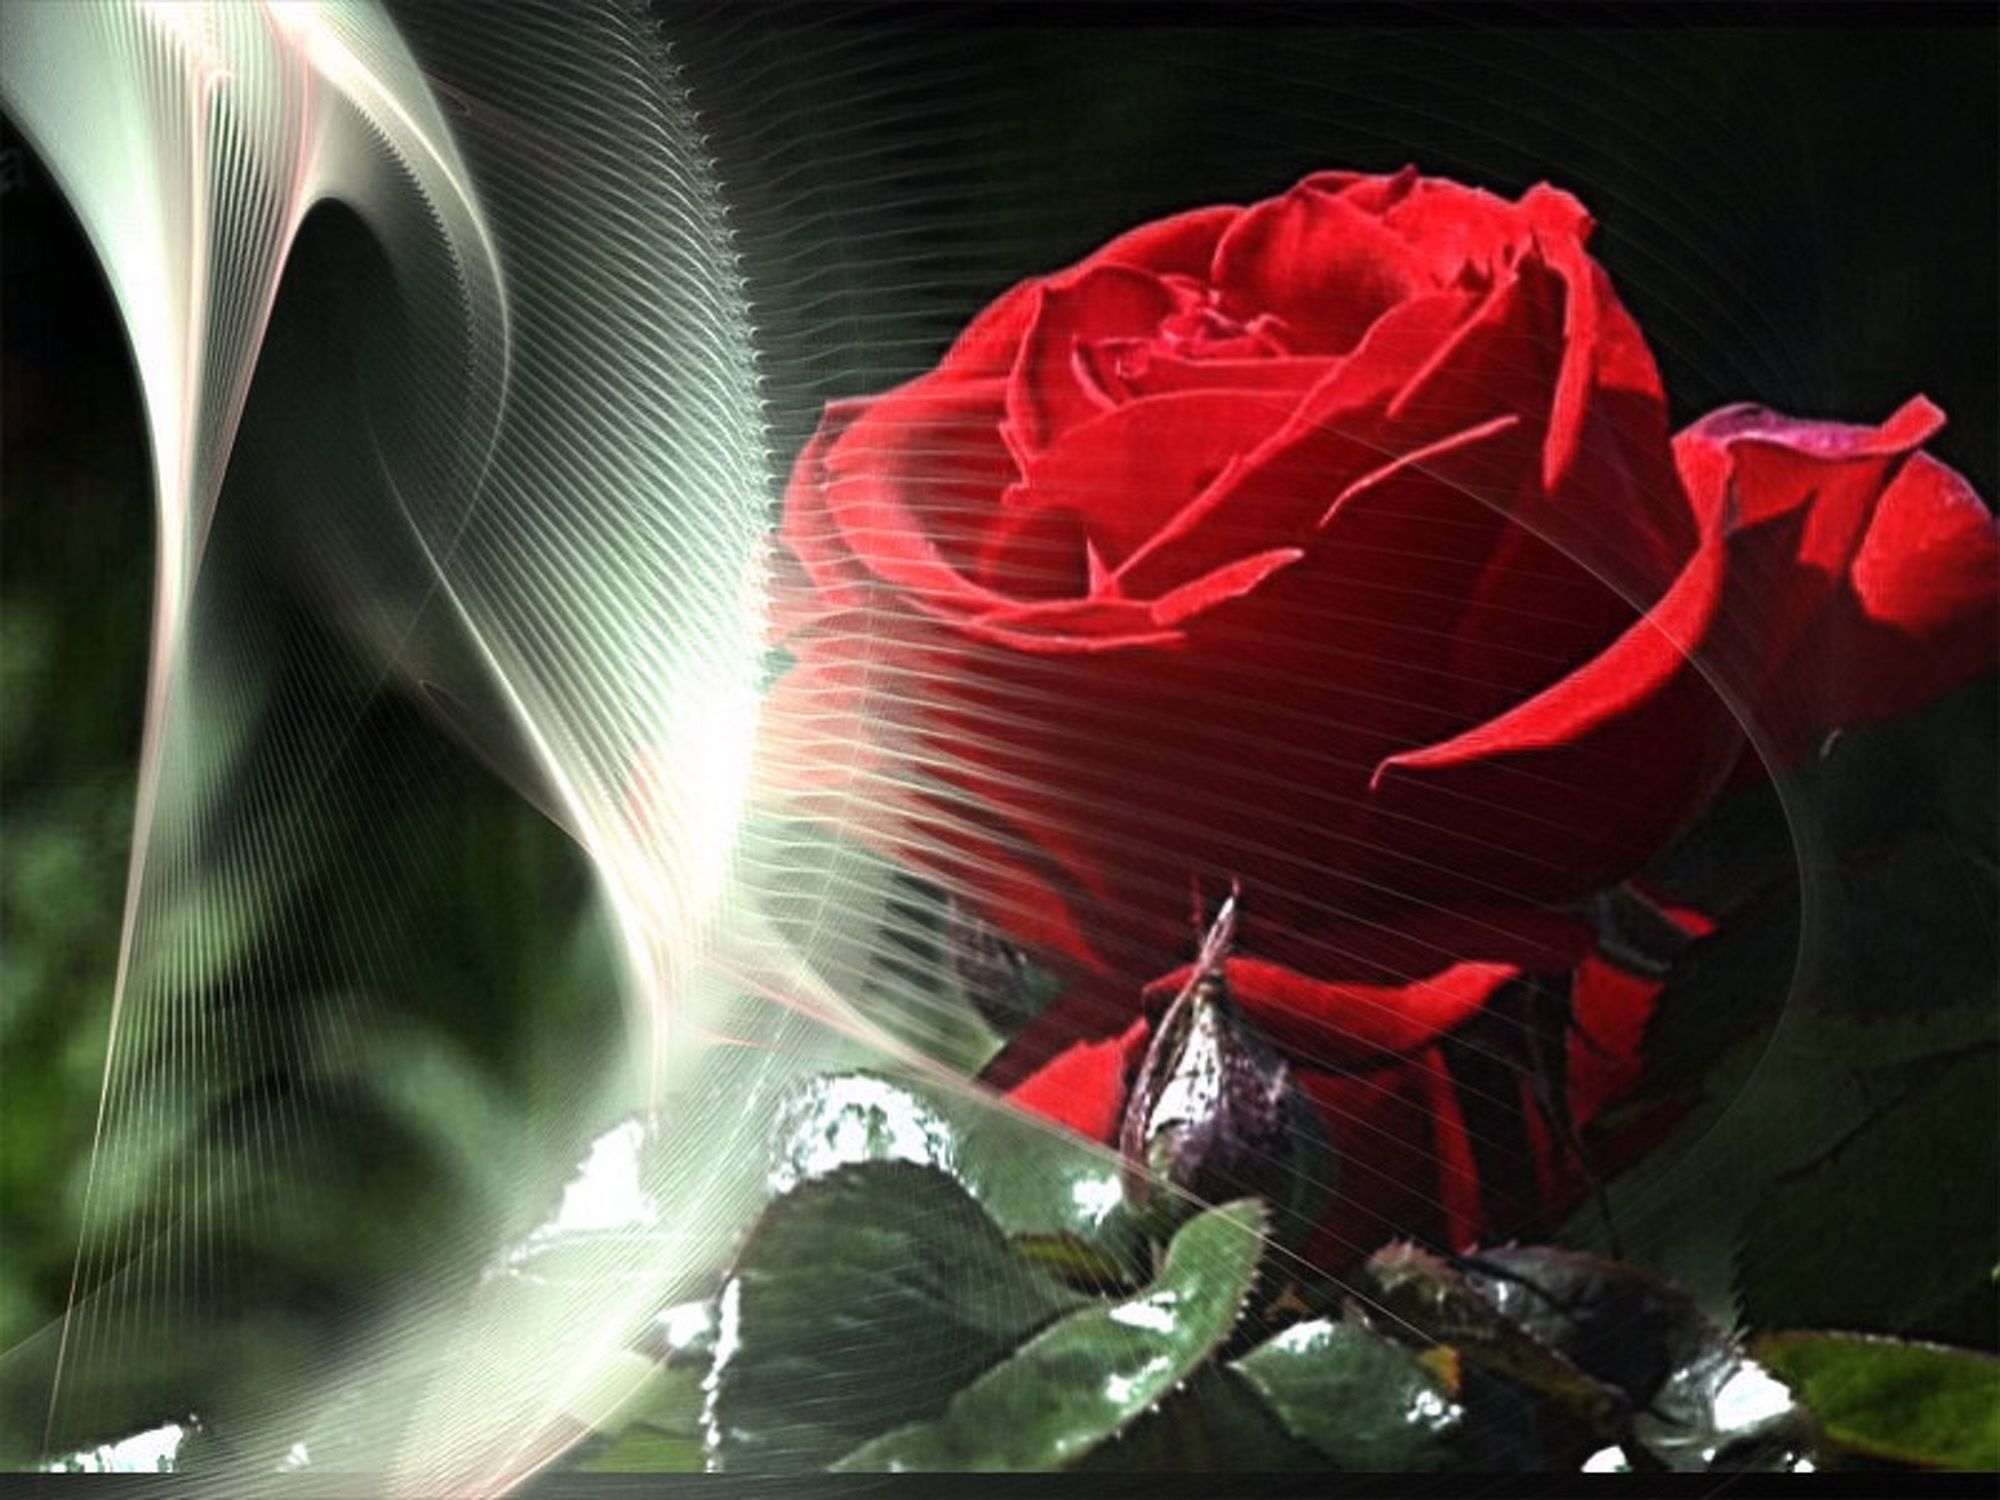 Bild mit rote Rosen, Bildercollagen, Stillleben & Collagen, Collagen, Collage, Digitale Blumen, Blumen Collagen